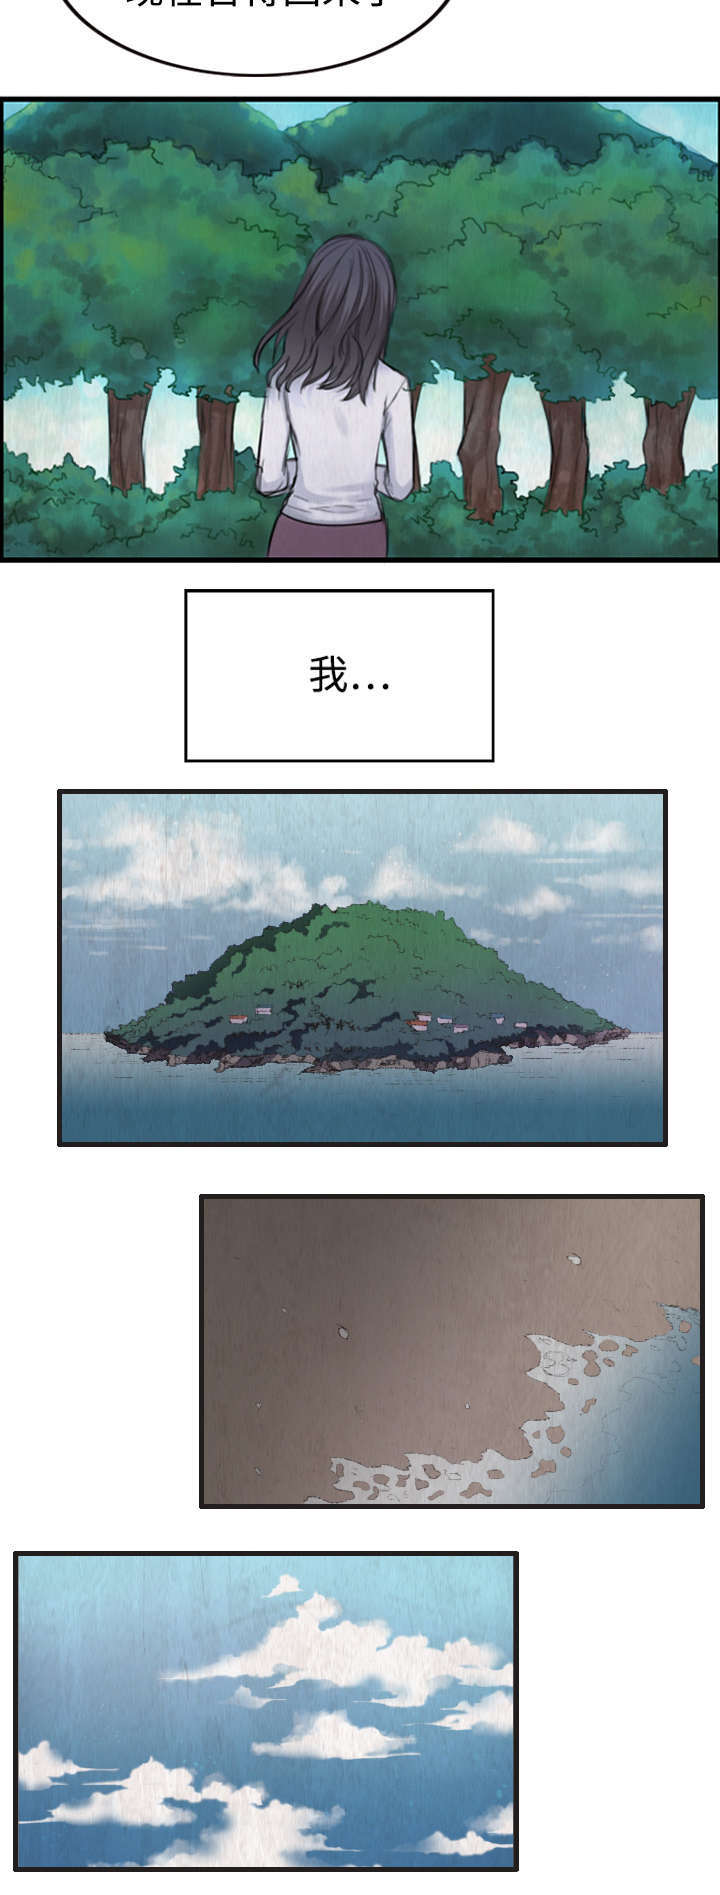 复仇之岛/炼狱鬼岛插图6